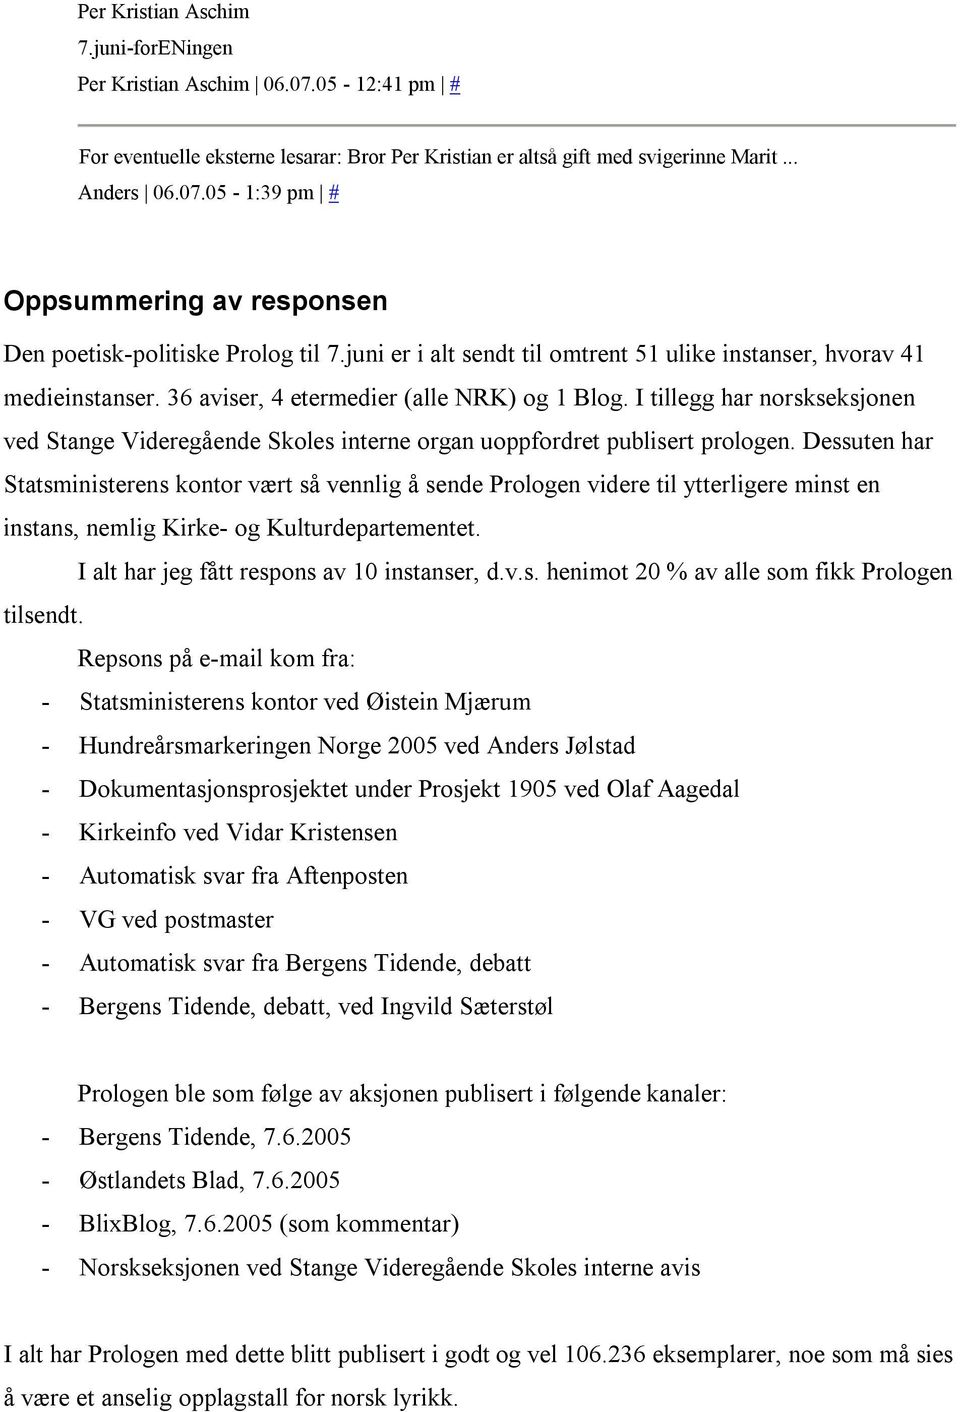 I tillegg har norskseksjonen ved Stange Videregående Skoles interne organ uoppfordret publisert prologen.